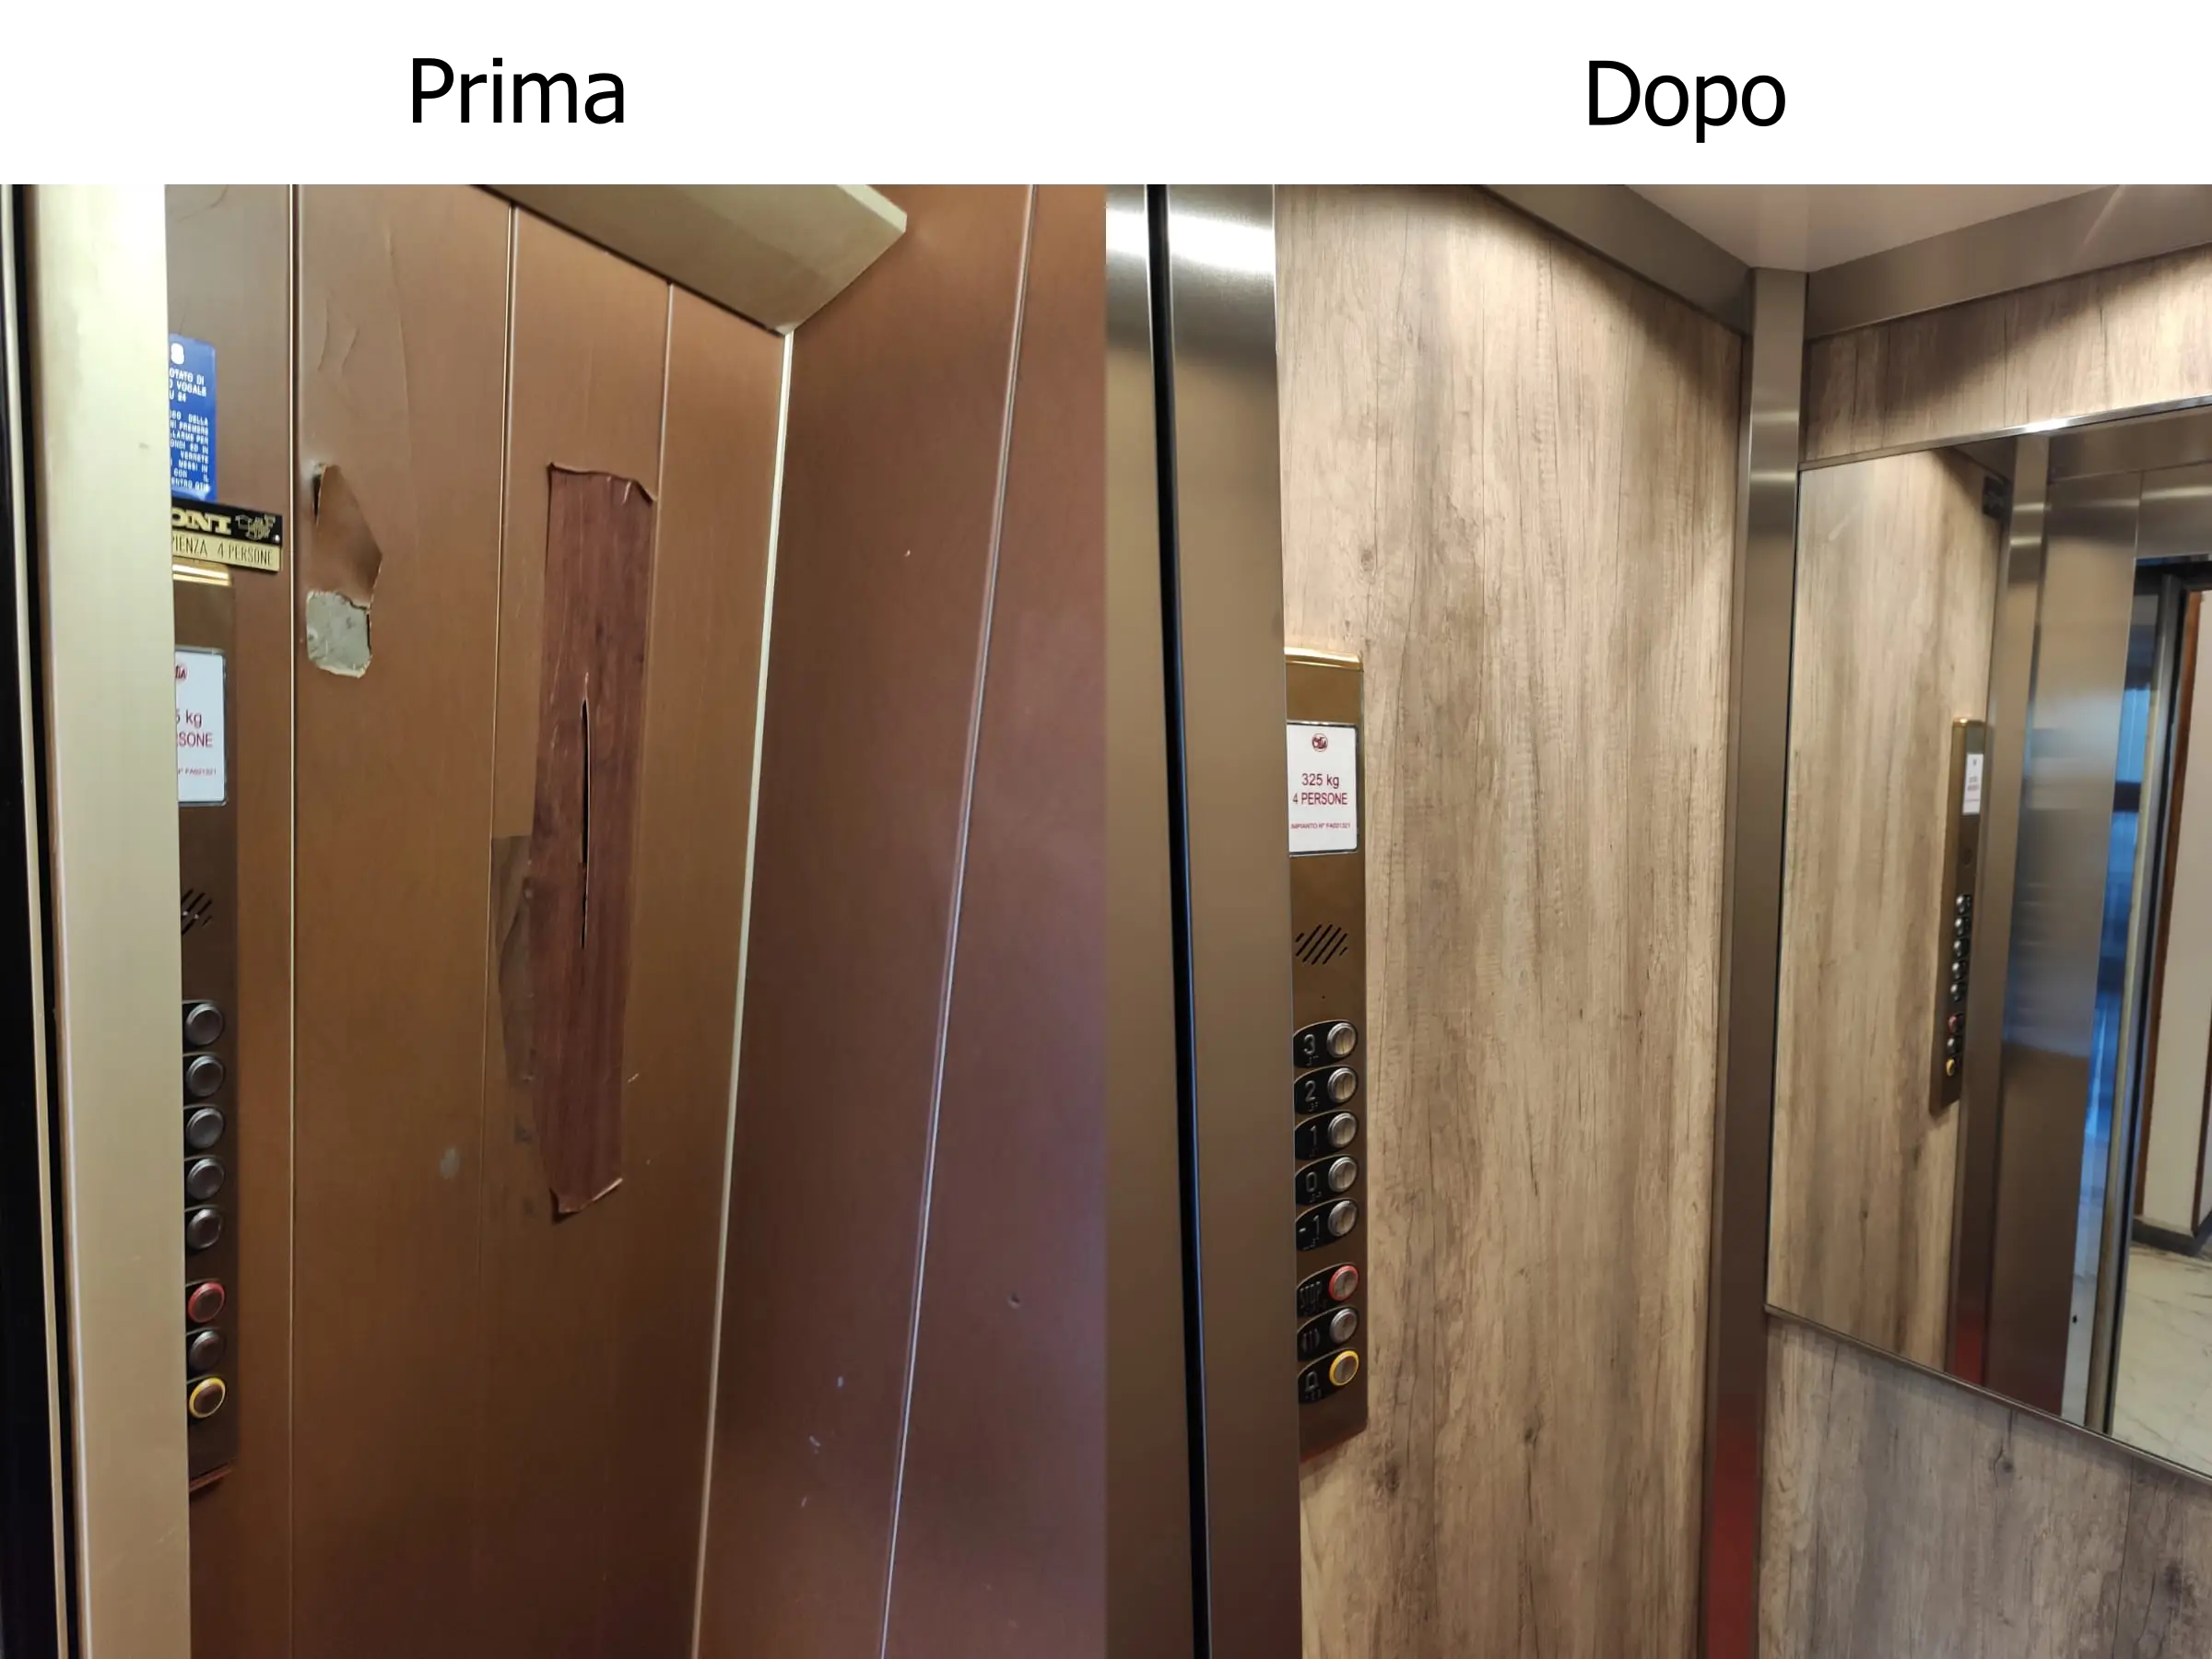 Vaglio srl - Linea cabine ascensori Torino - Restyling - Prima e dopo 3